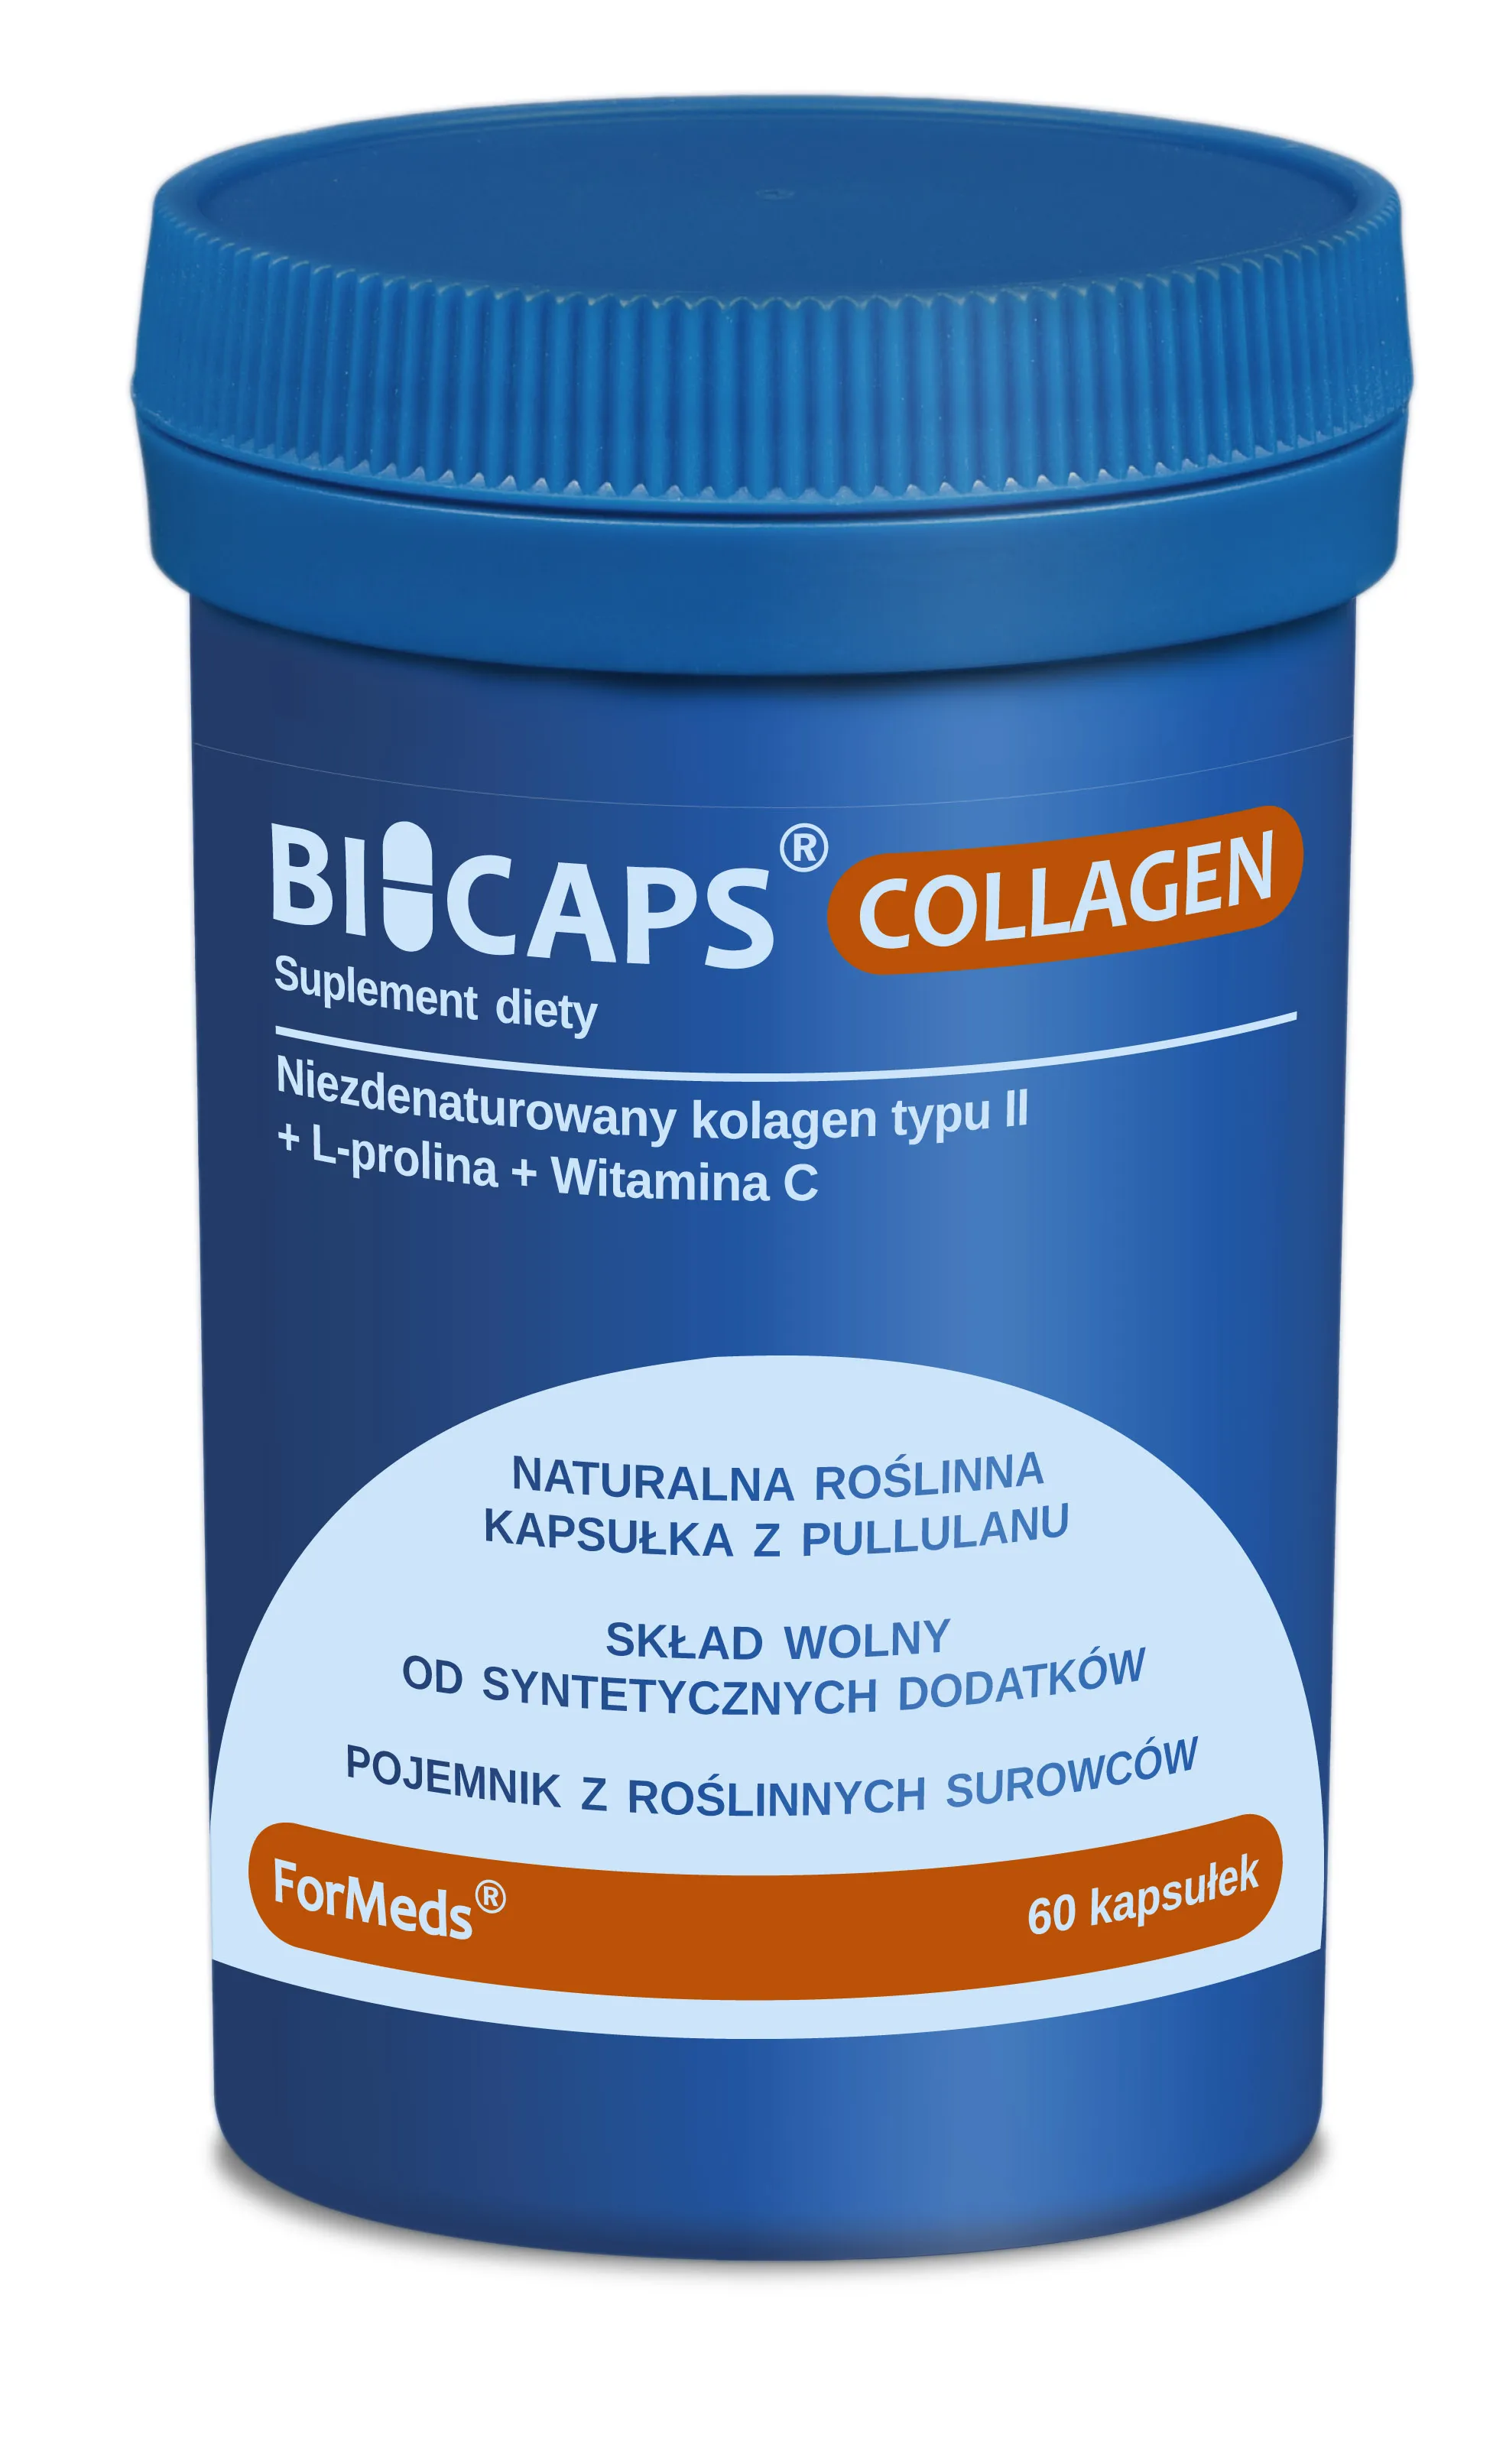 ForMeds Bicaps Collagen, suplement diety, 60 kapsułek